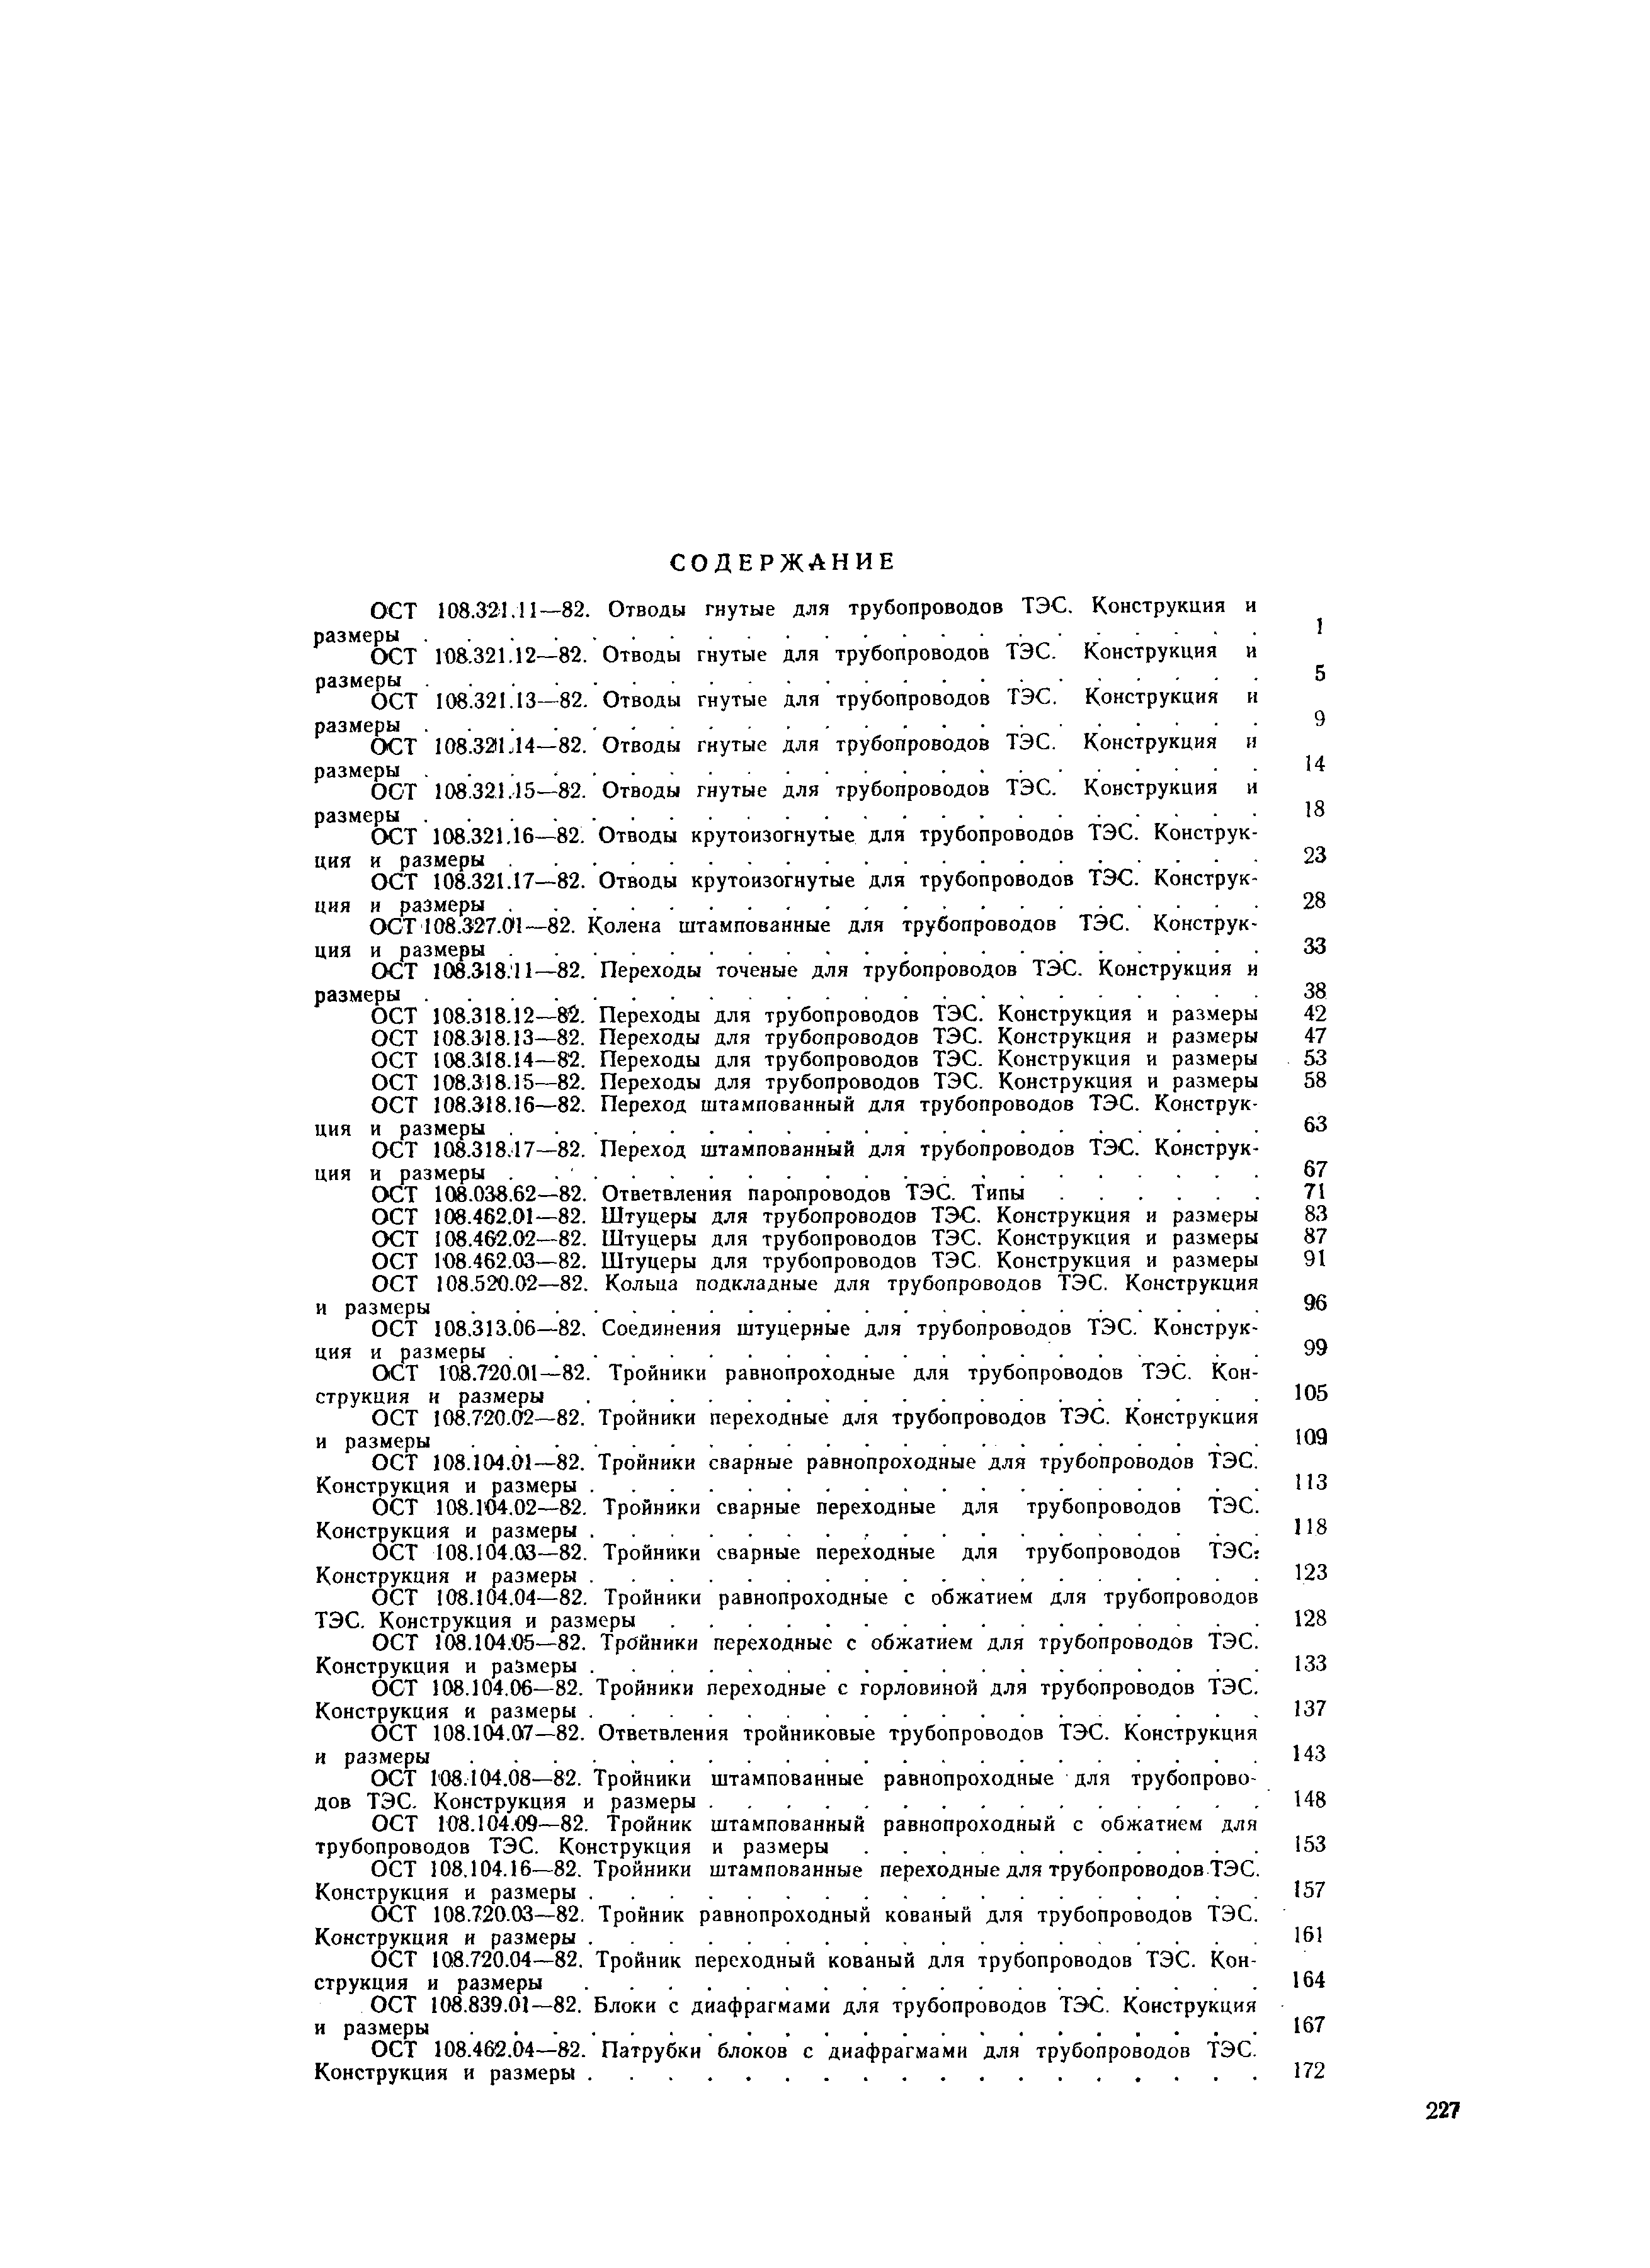 ОСТ 108.318.15-82